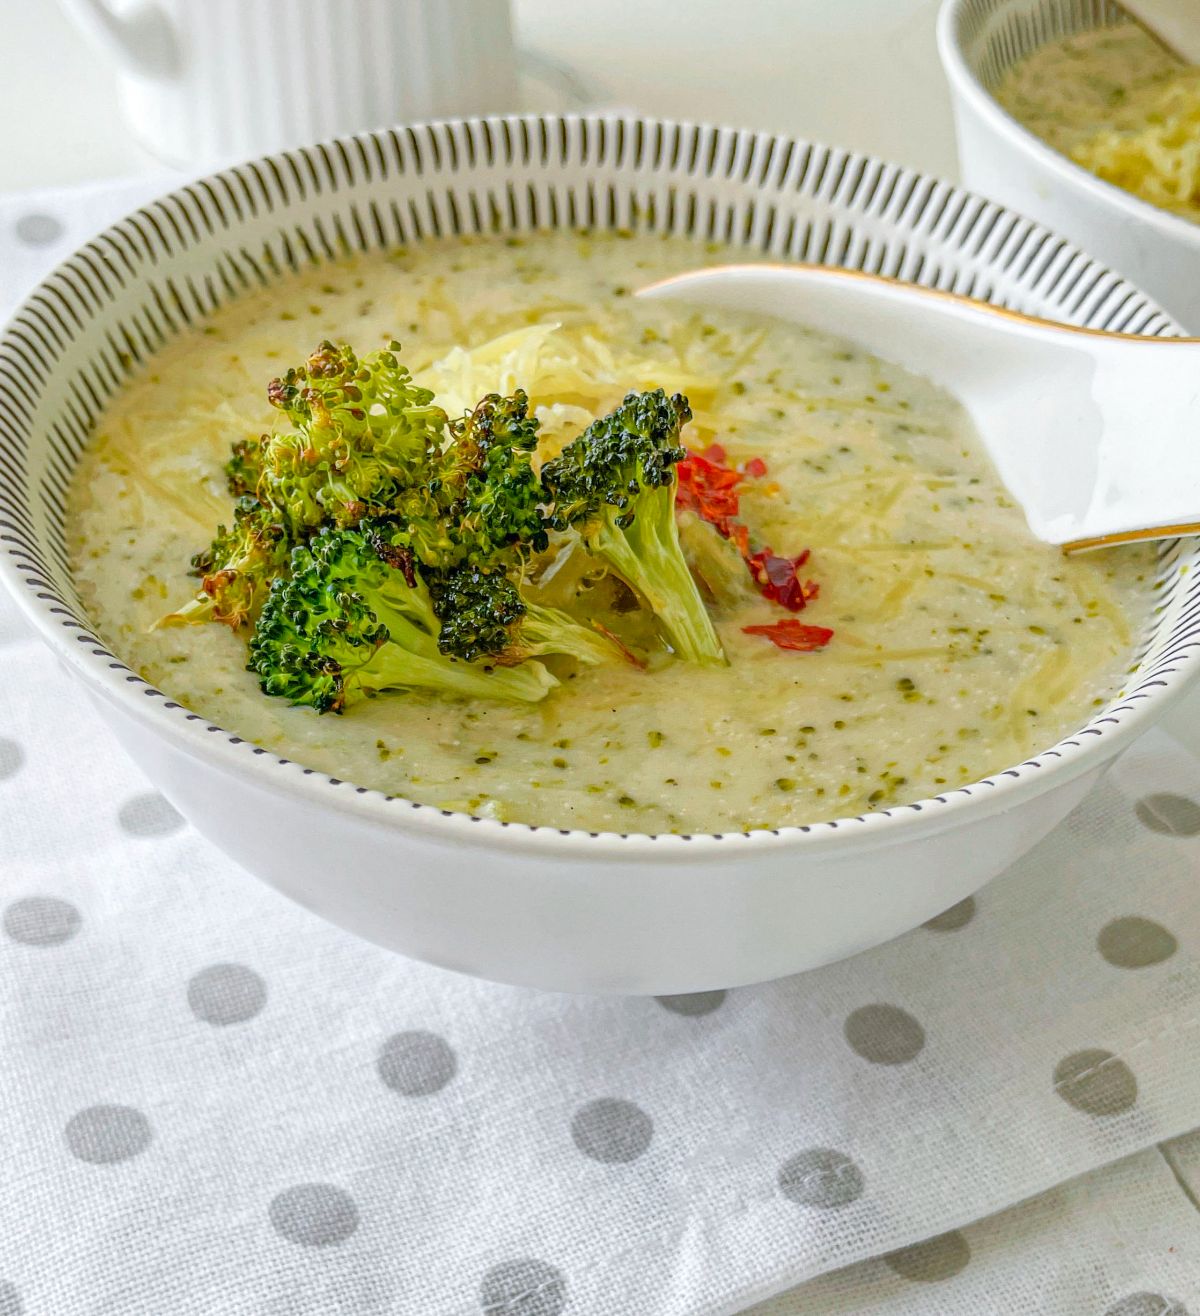 yummy Vegetarian Broccoli Cheddar Soup ready to enjoy 